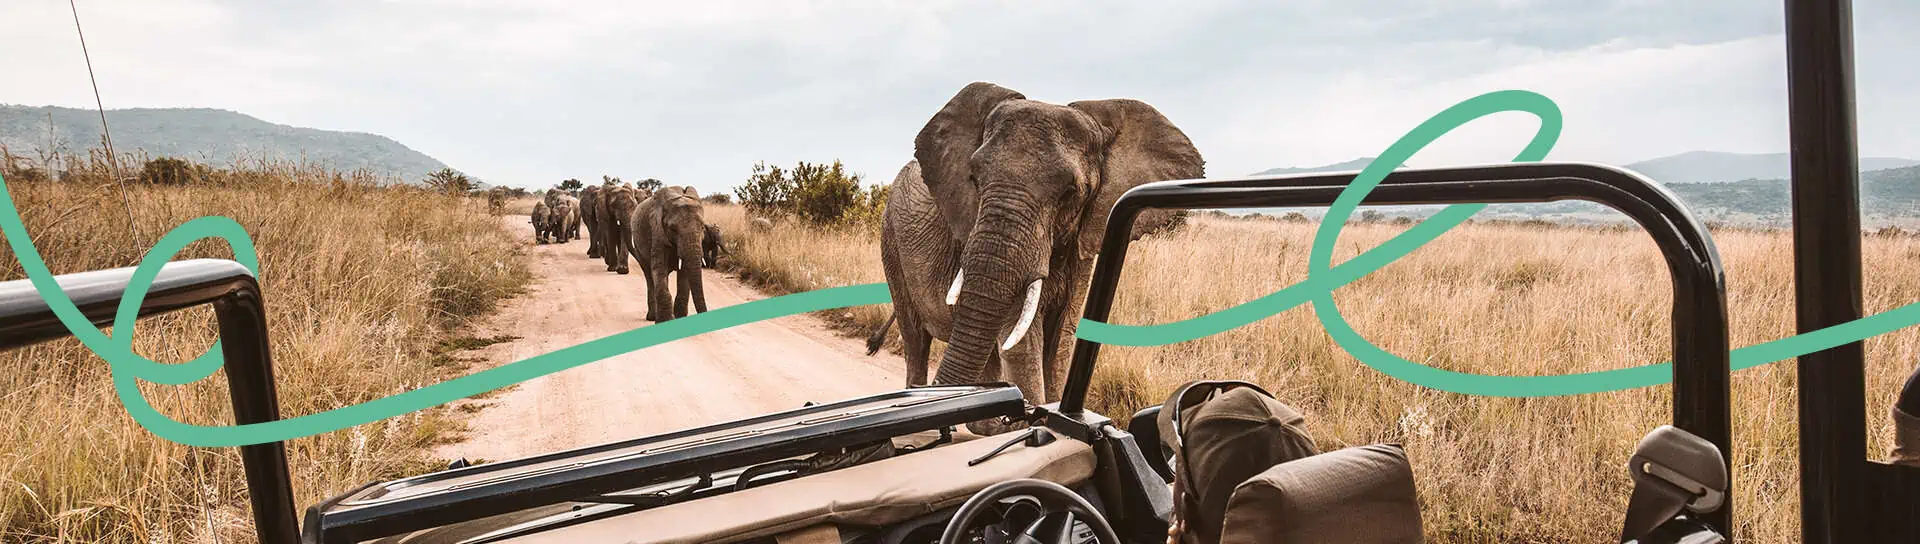 Výhled z auta na slony v safari